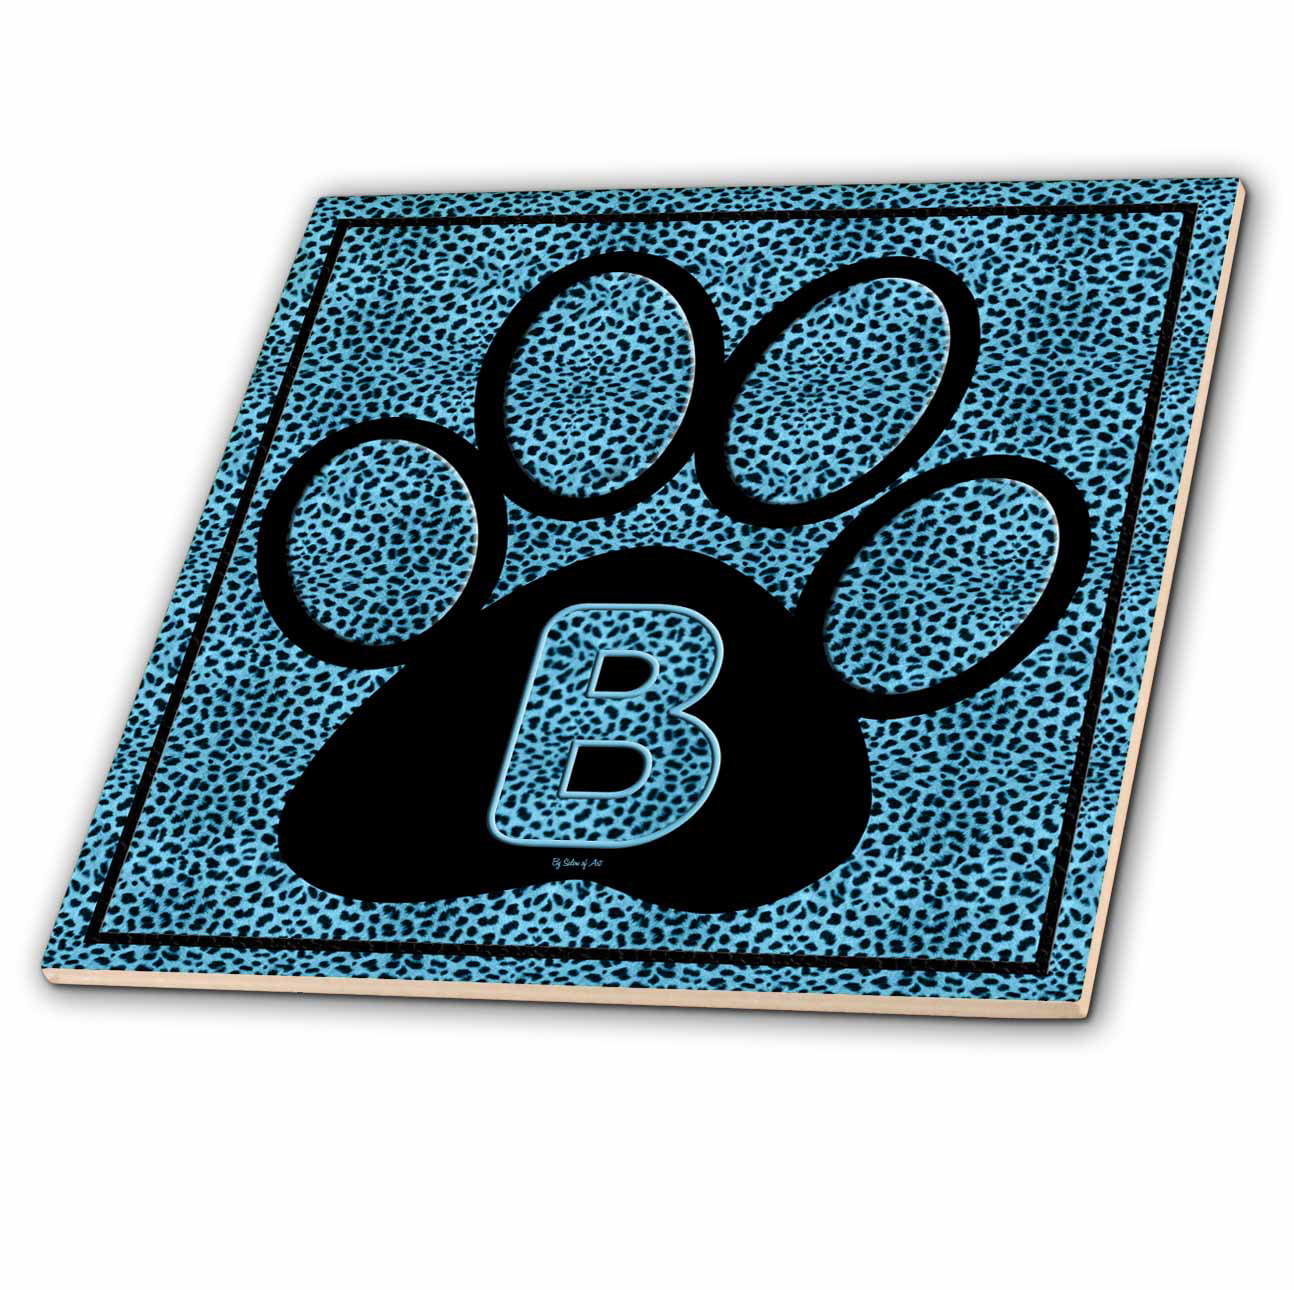 12 3dRose ct_25935_4 Letter B Standard Cheetah Print Cat Paw Ceramic Tile 